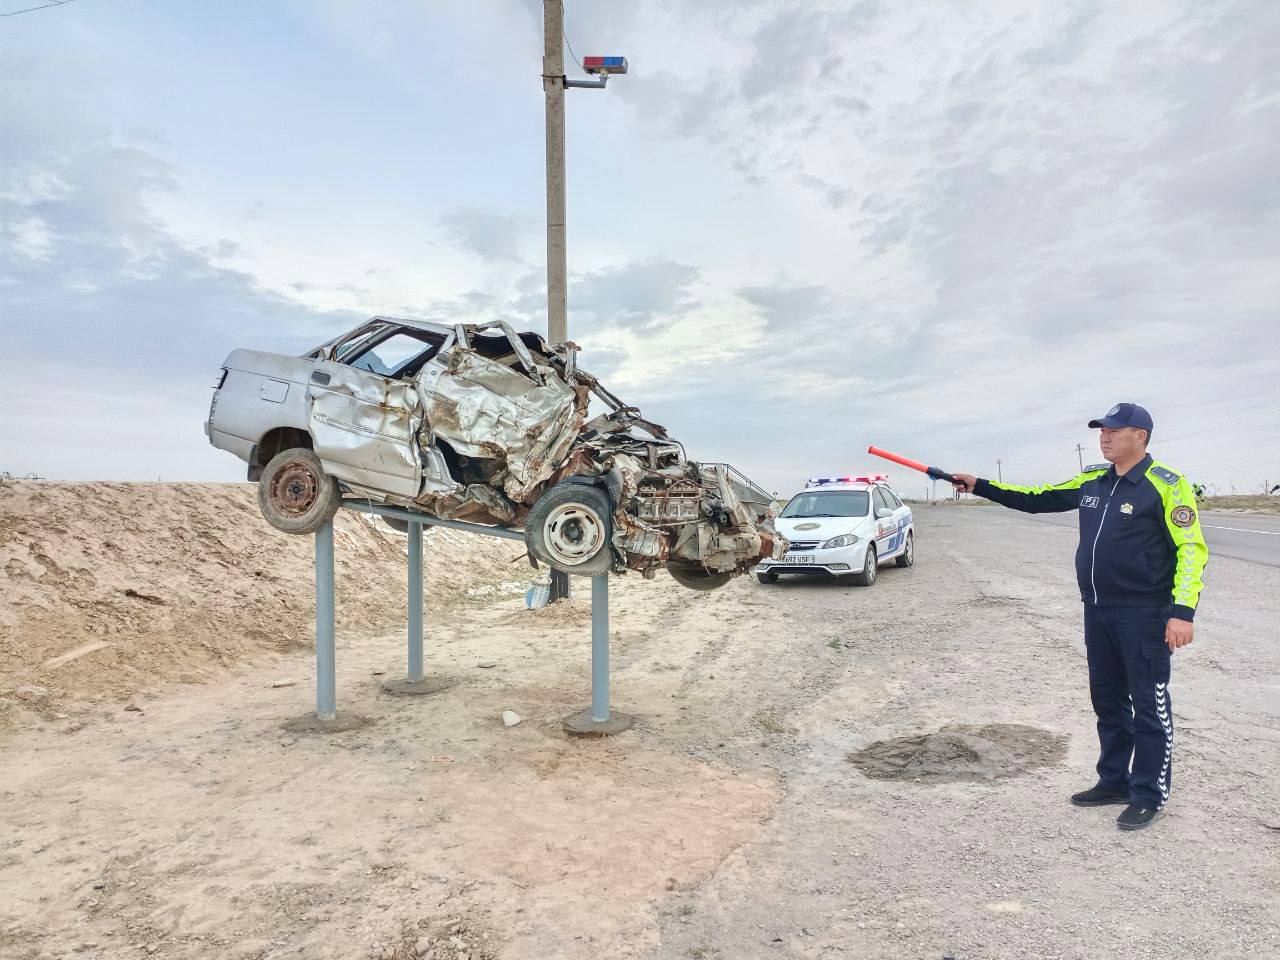 В Узбекистане водителей снова начали призывать соблюдать ПДД с помощью разбитых машин